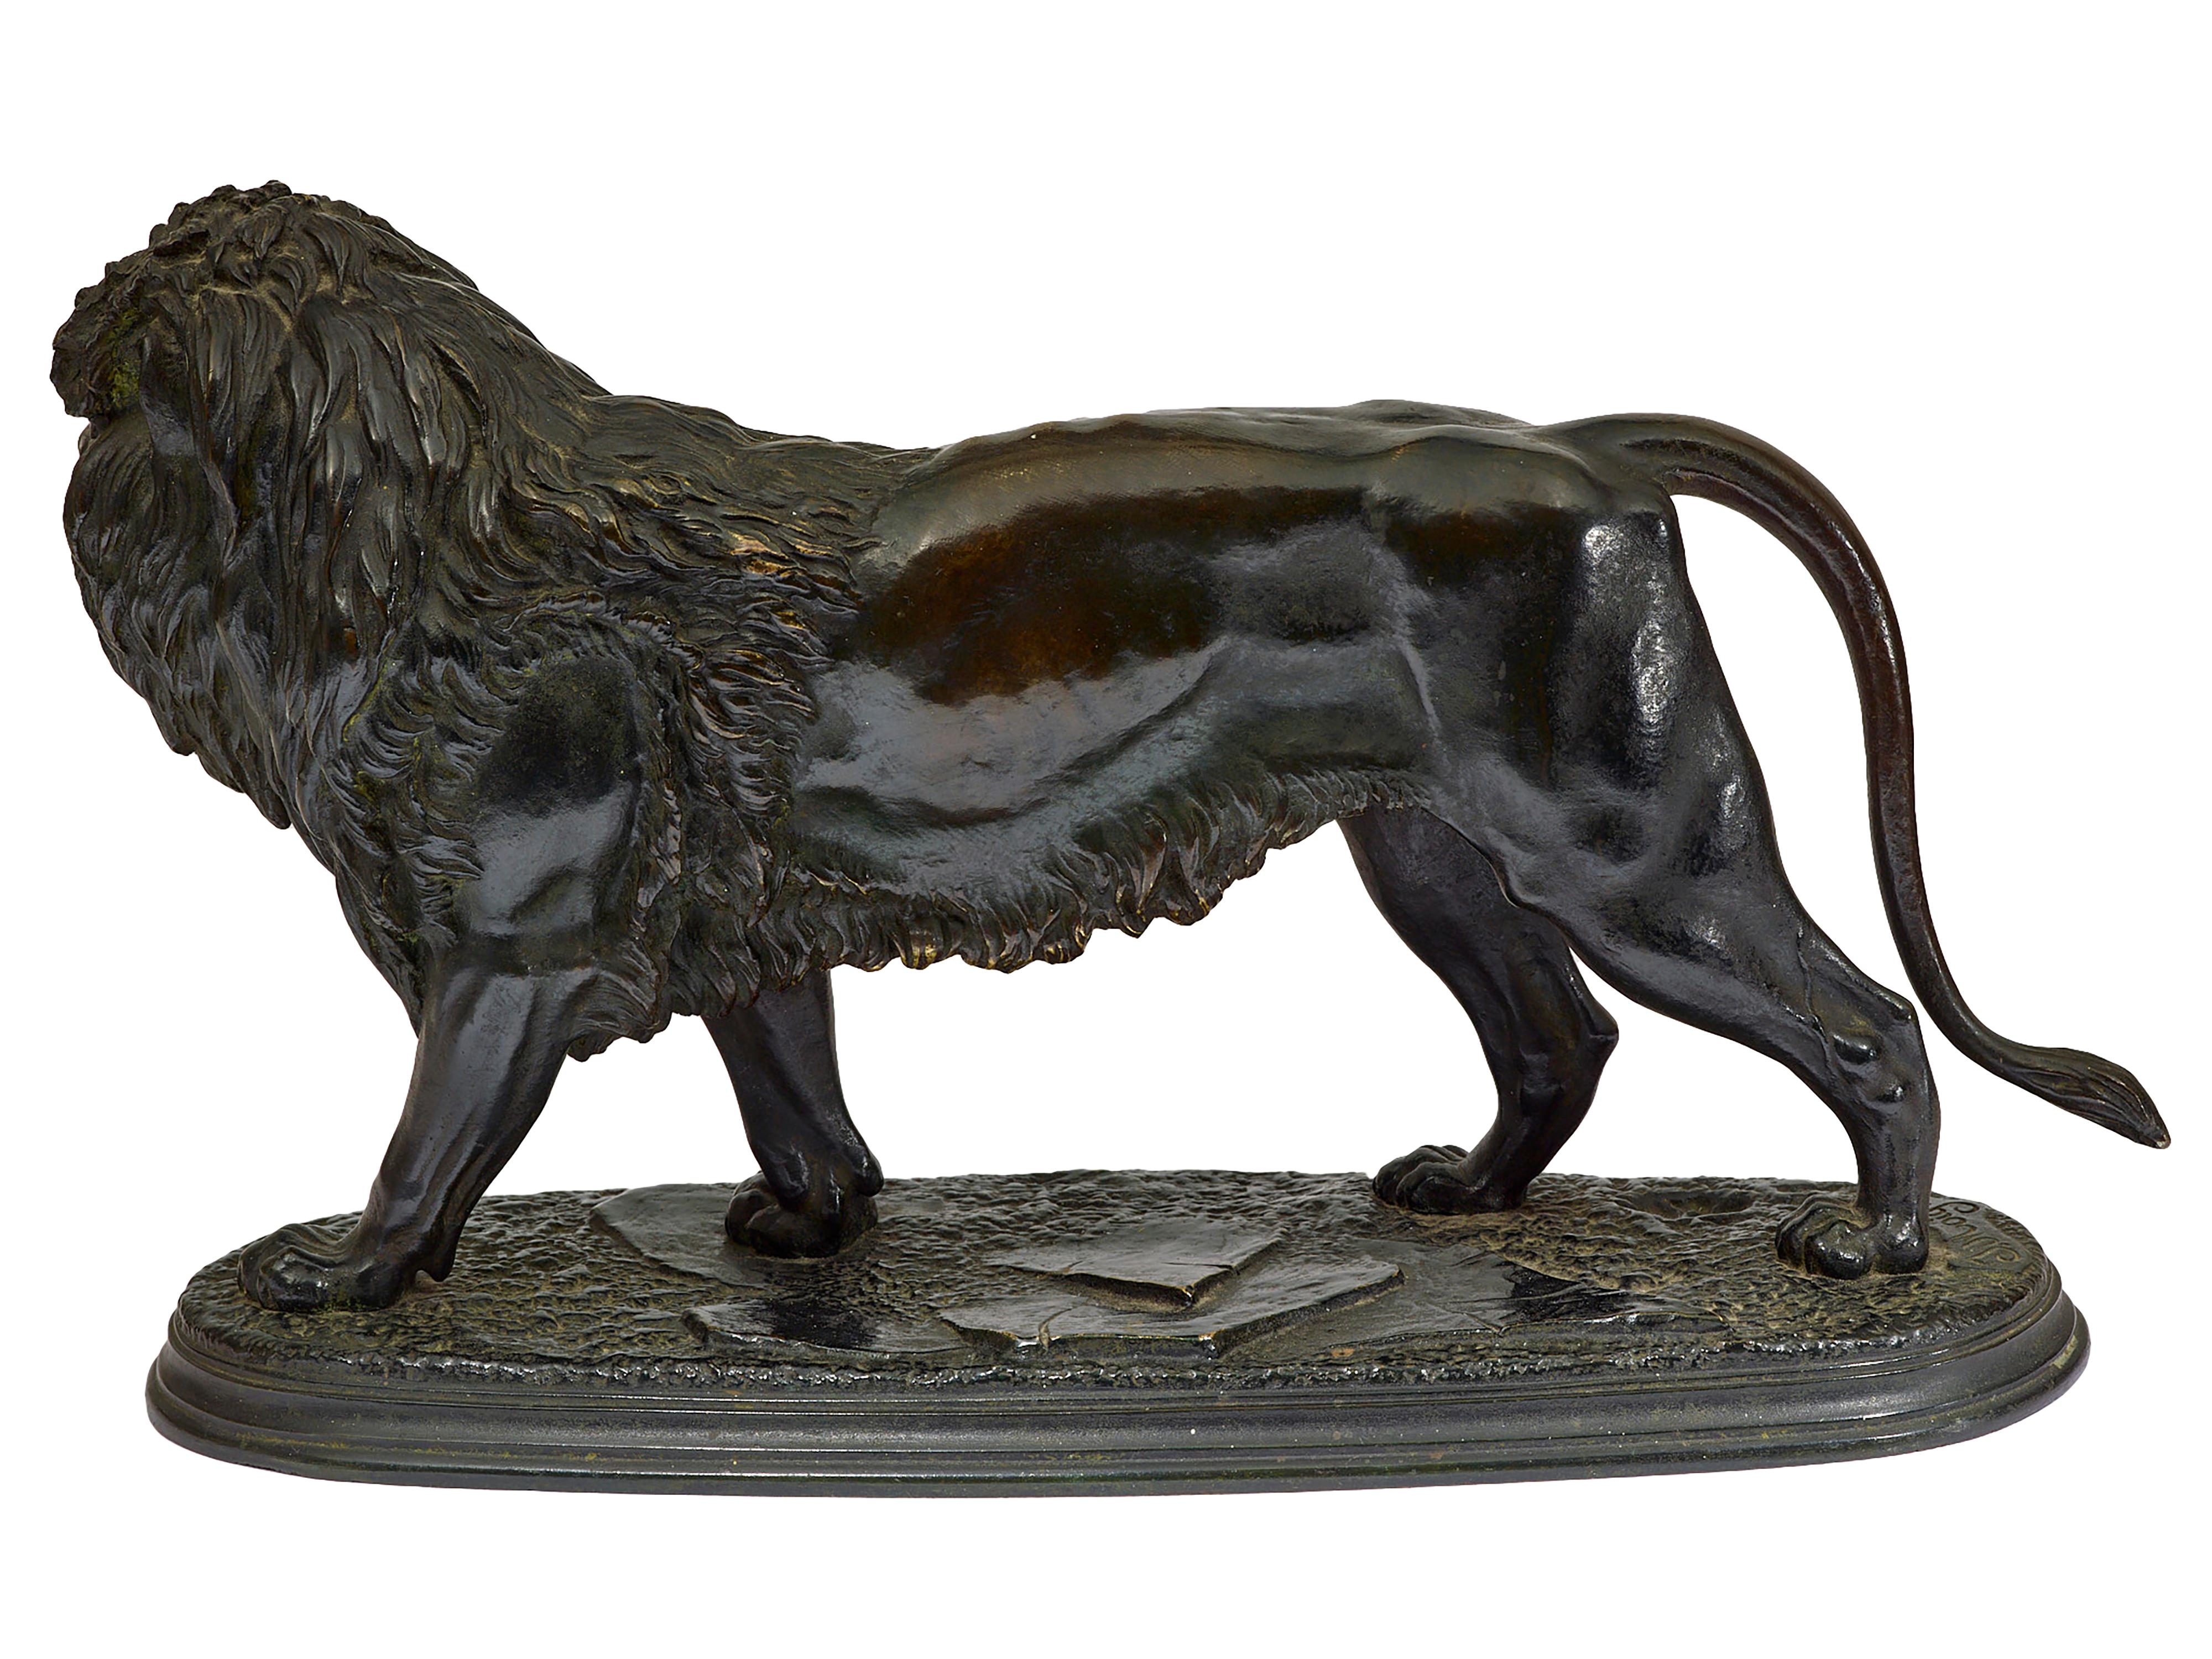 Sculpture en bronze d'un lion
Fonte originale en bronze d'un lion marquée 